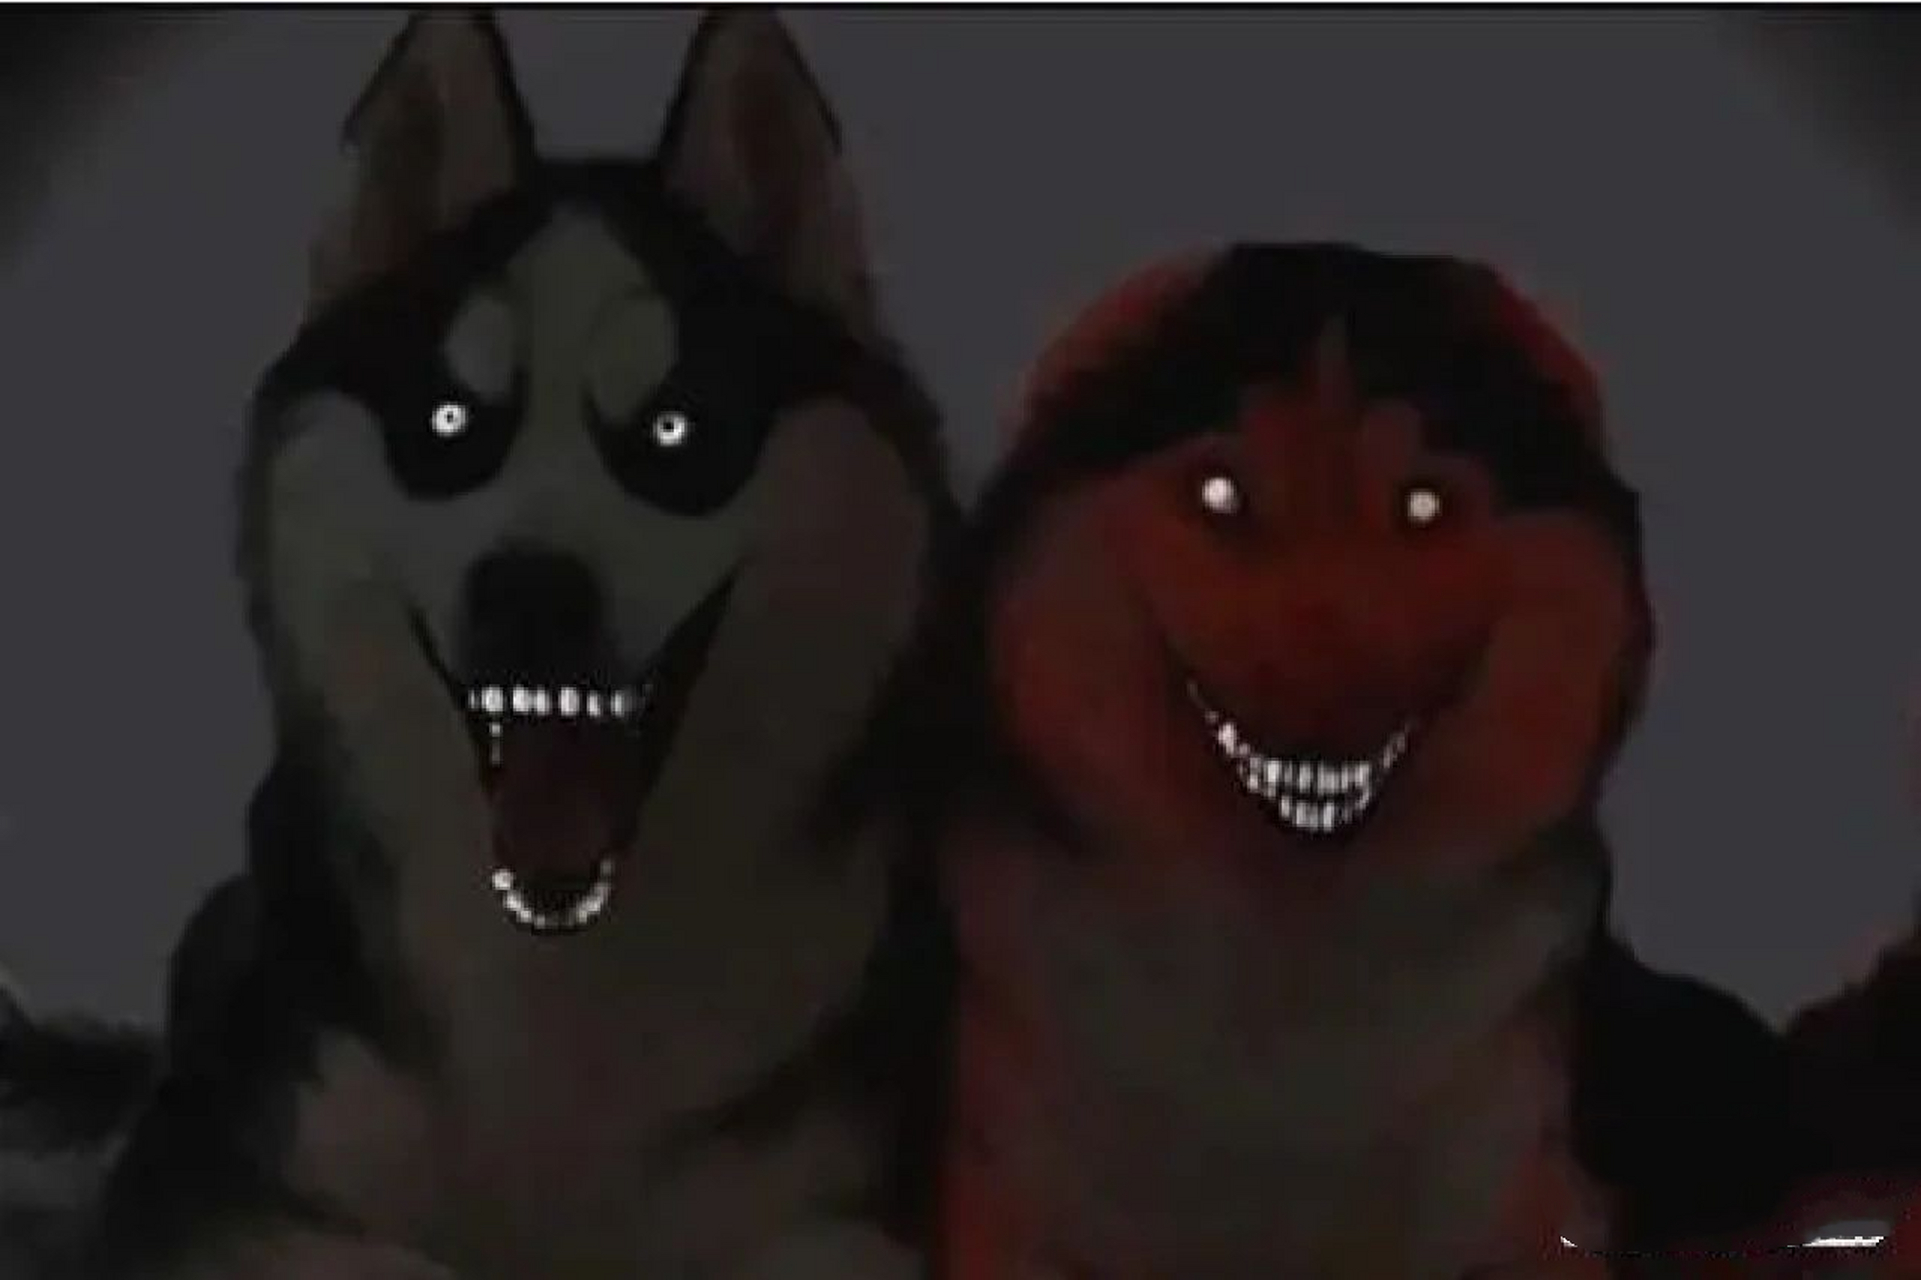 微笑狗和微笑男人恐怖图片,微恐慎入 吓死我了